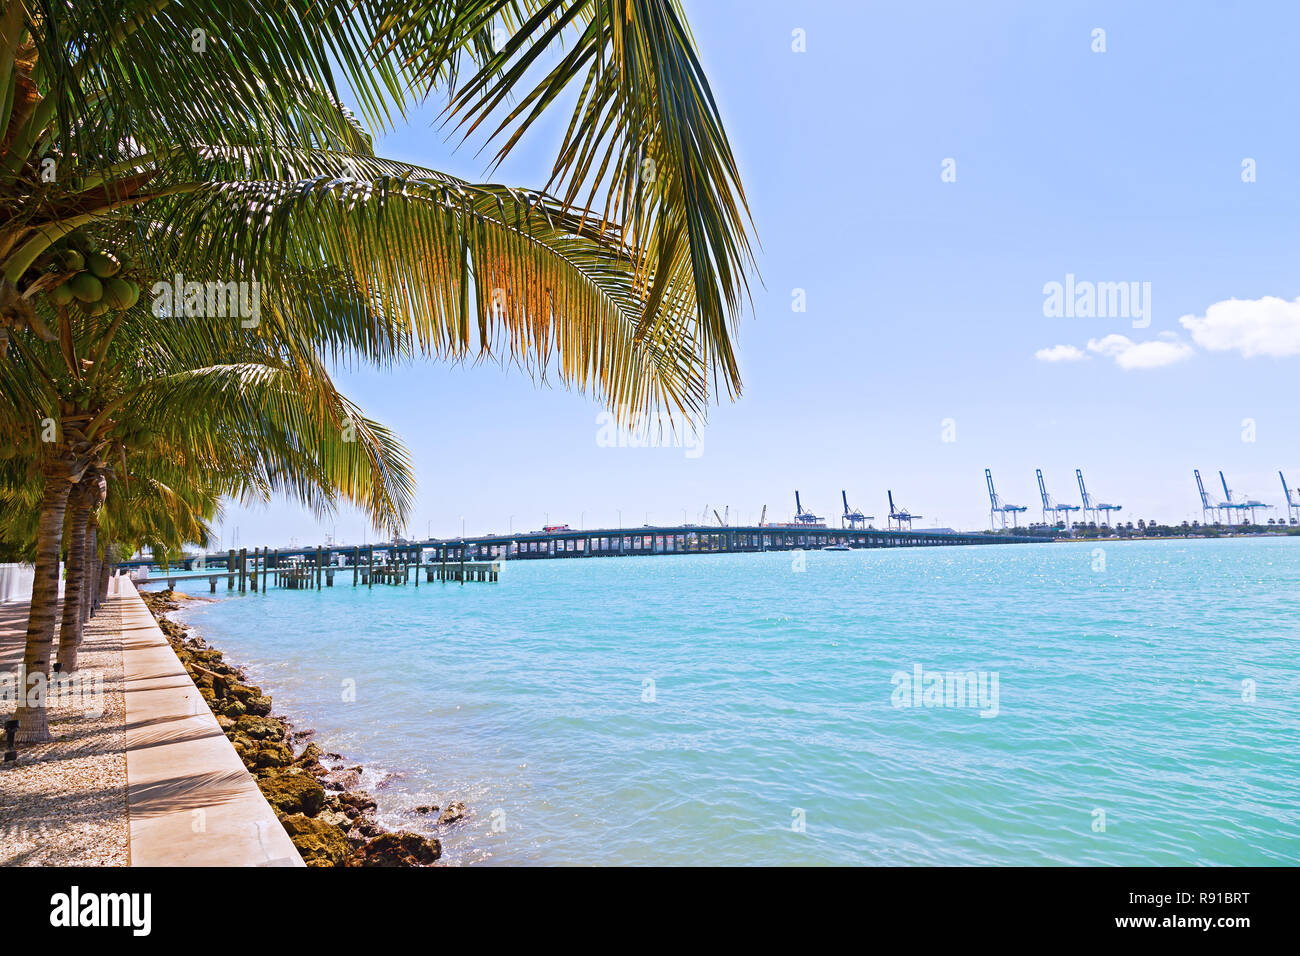 Palmiers dans une rangée avec ombres symétrique le long de cours d'eau à Miami Beach, Floride, USA. Jour de l'ombre des cocotiers au bord de la voie. Banque D'Images